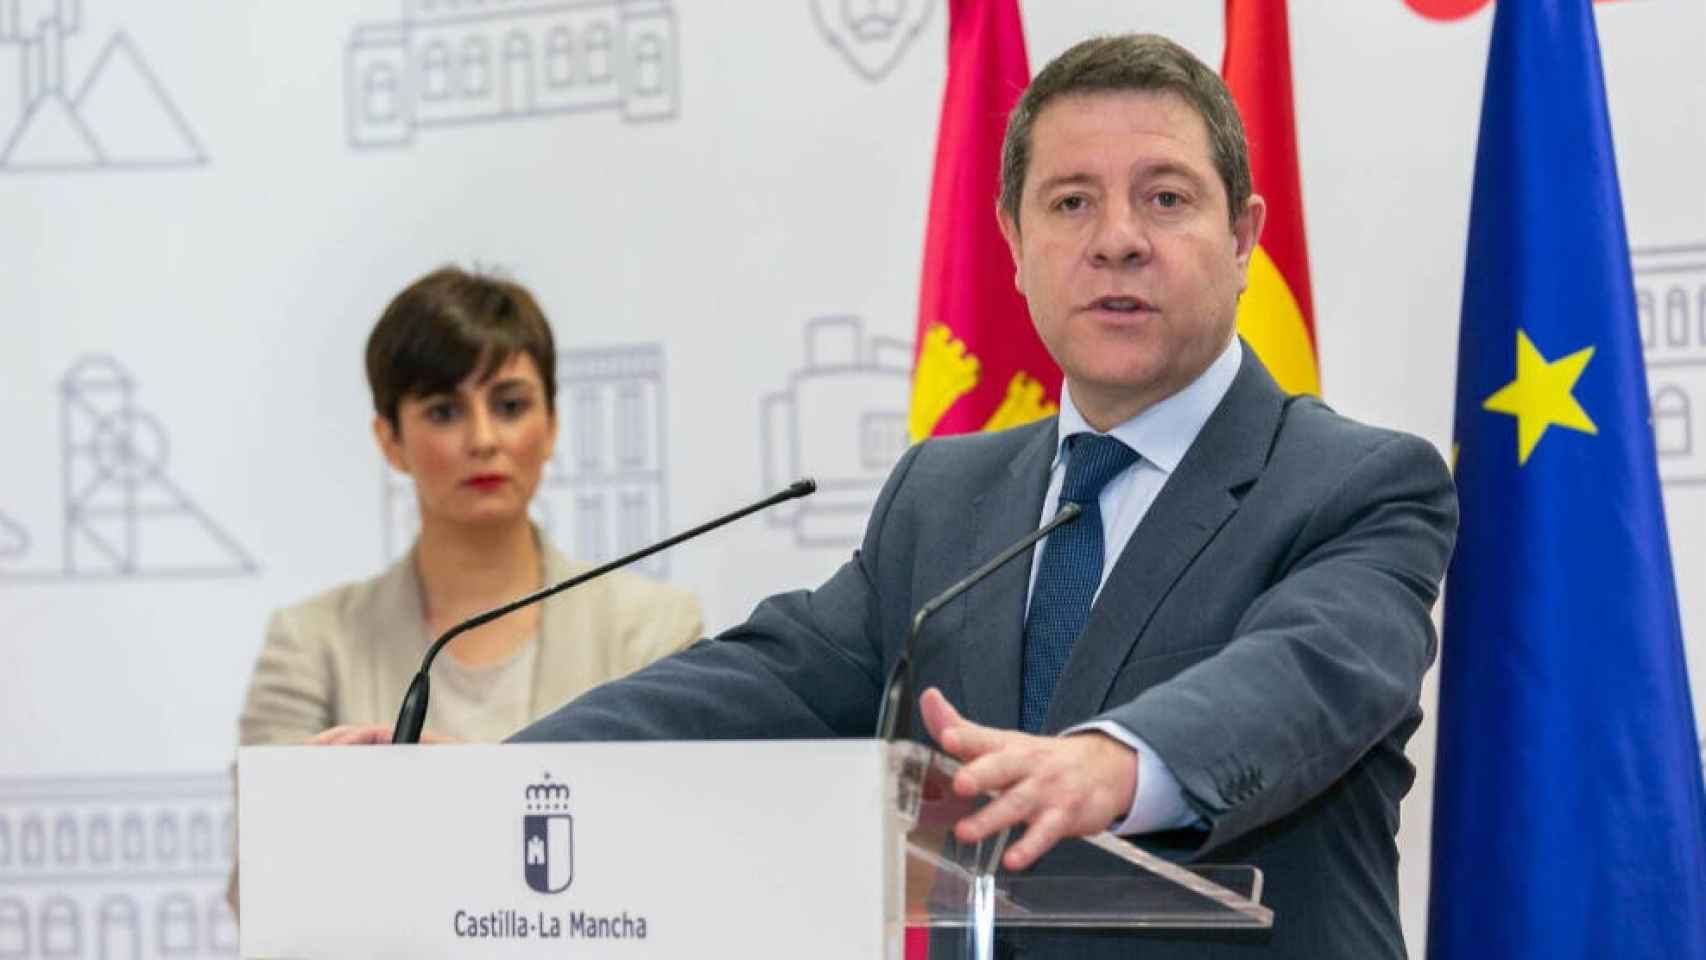 El presidente de Castilla-La Mancha, Emiliano García-Page, durante su visita a Puertollano, con la alcaldesa, Isabel Rodríguez, al fondo